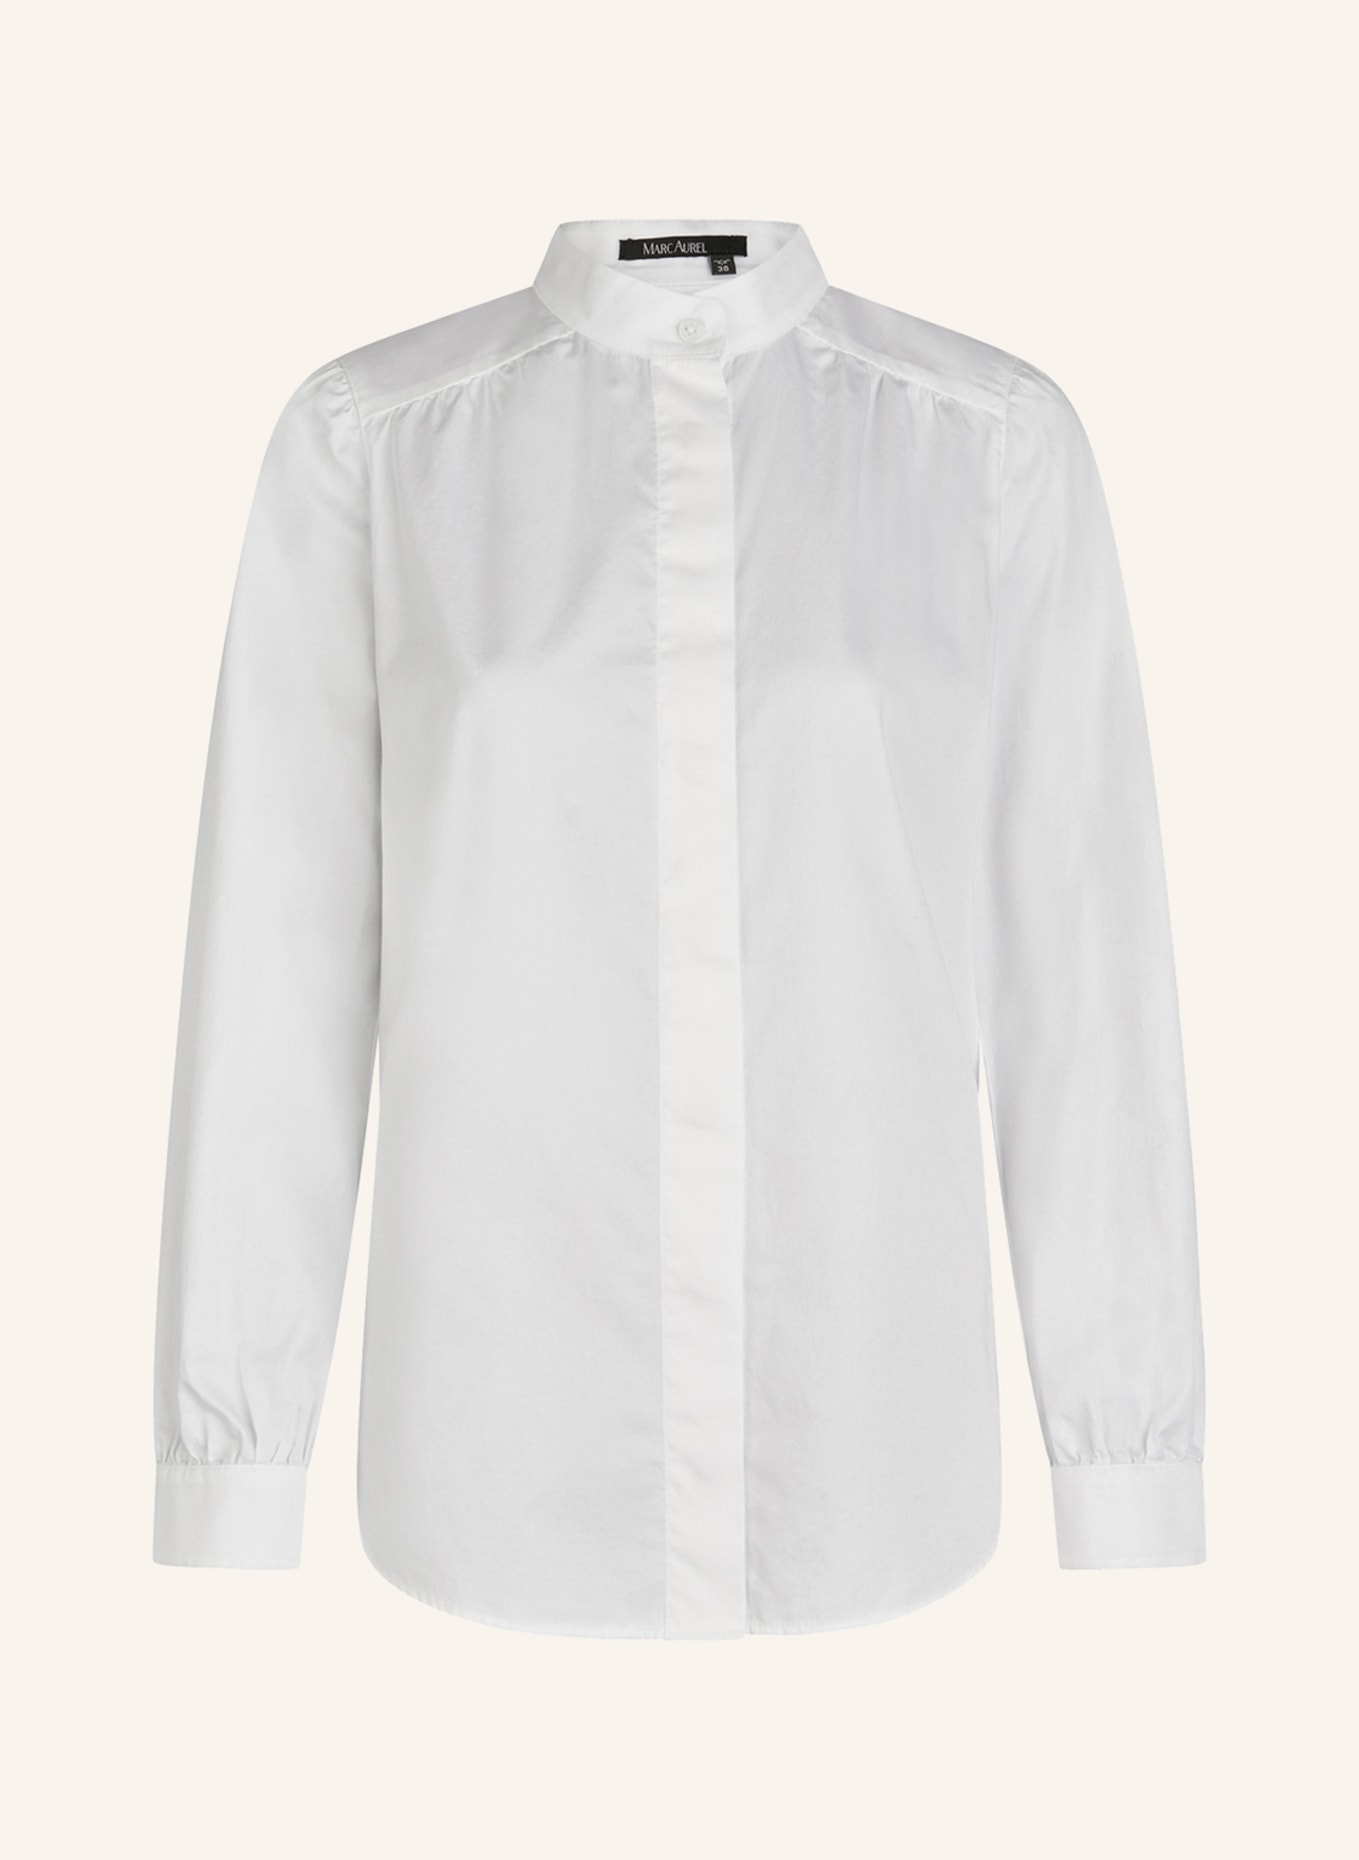 MARC AUREL Hemd, Farbe: WEISS (Bild 1)